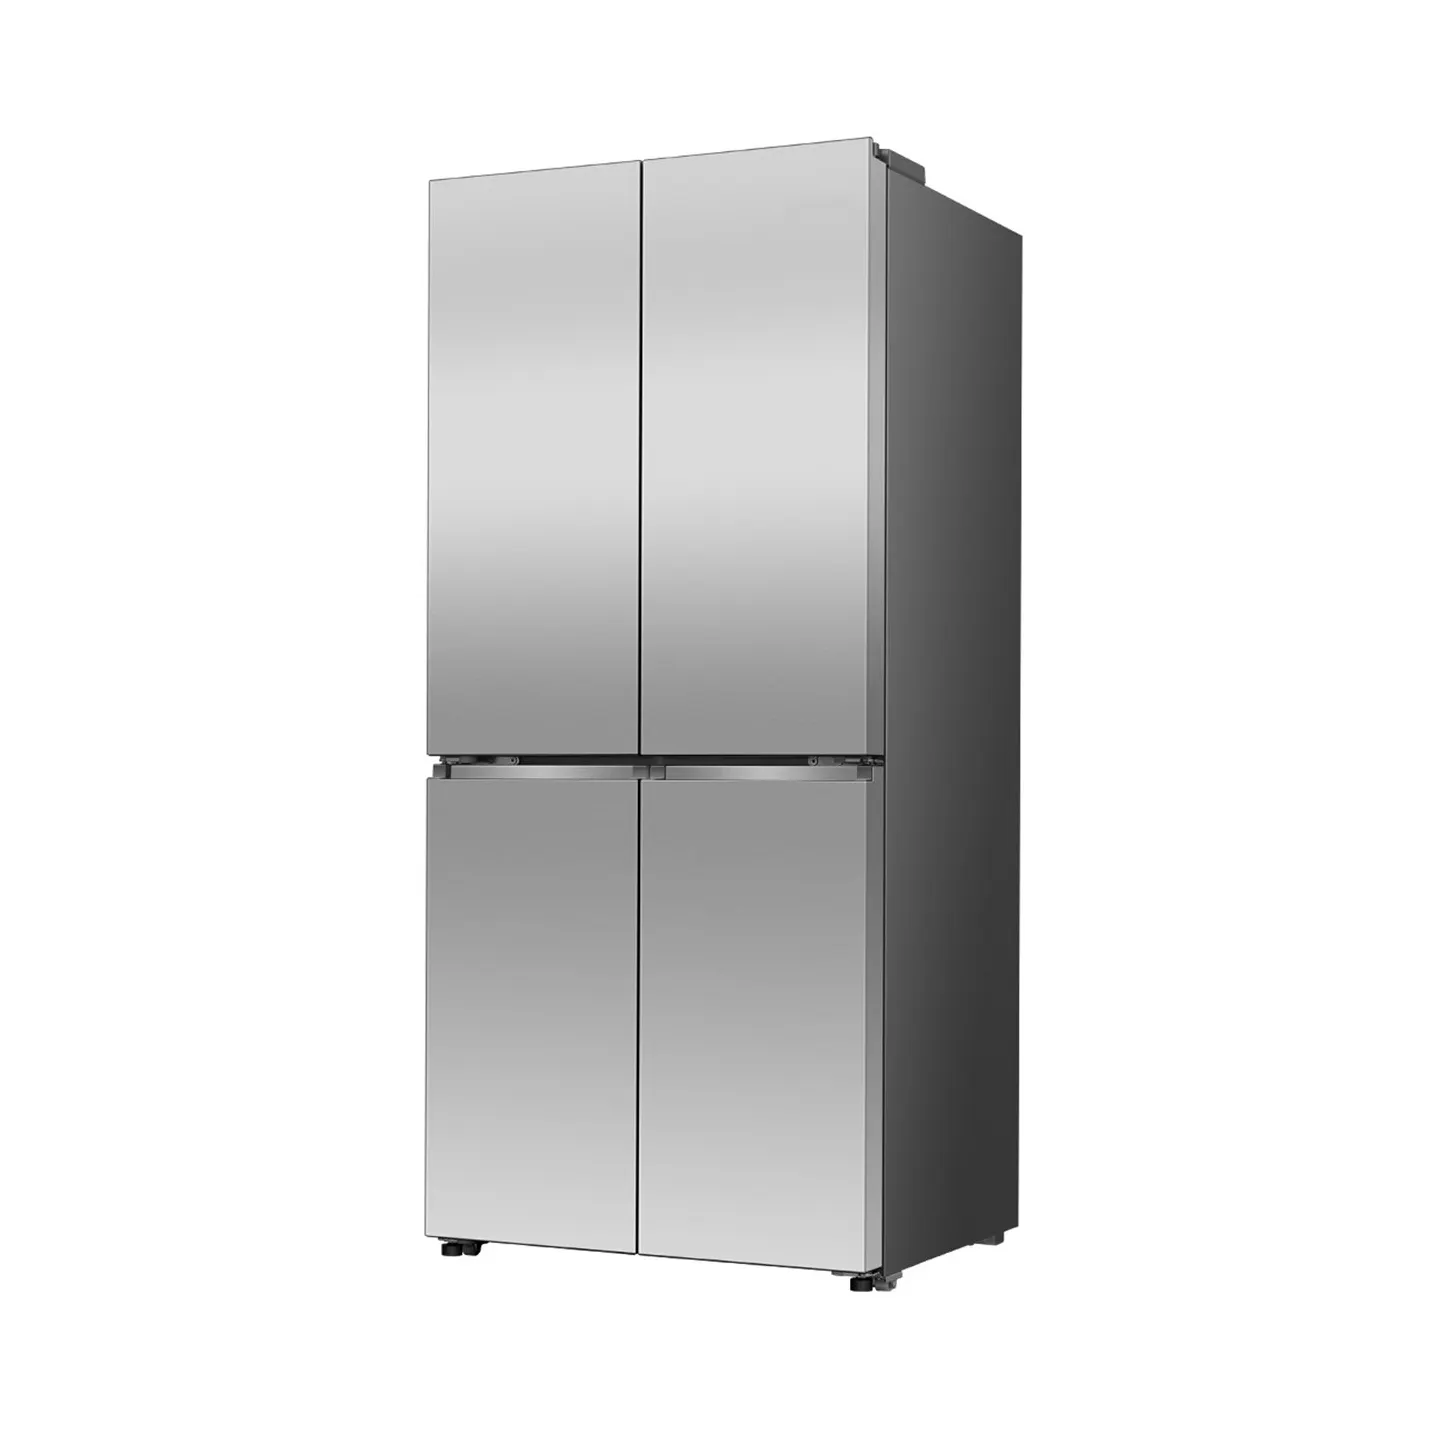 Refrigerador comercial de supermercado Refrigerador vertical Puerta de vidrio Escaparate de bebidas Refrigerador de exhibición